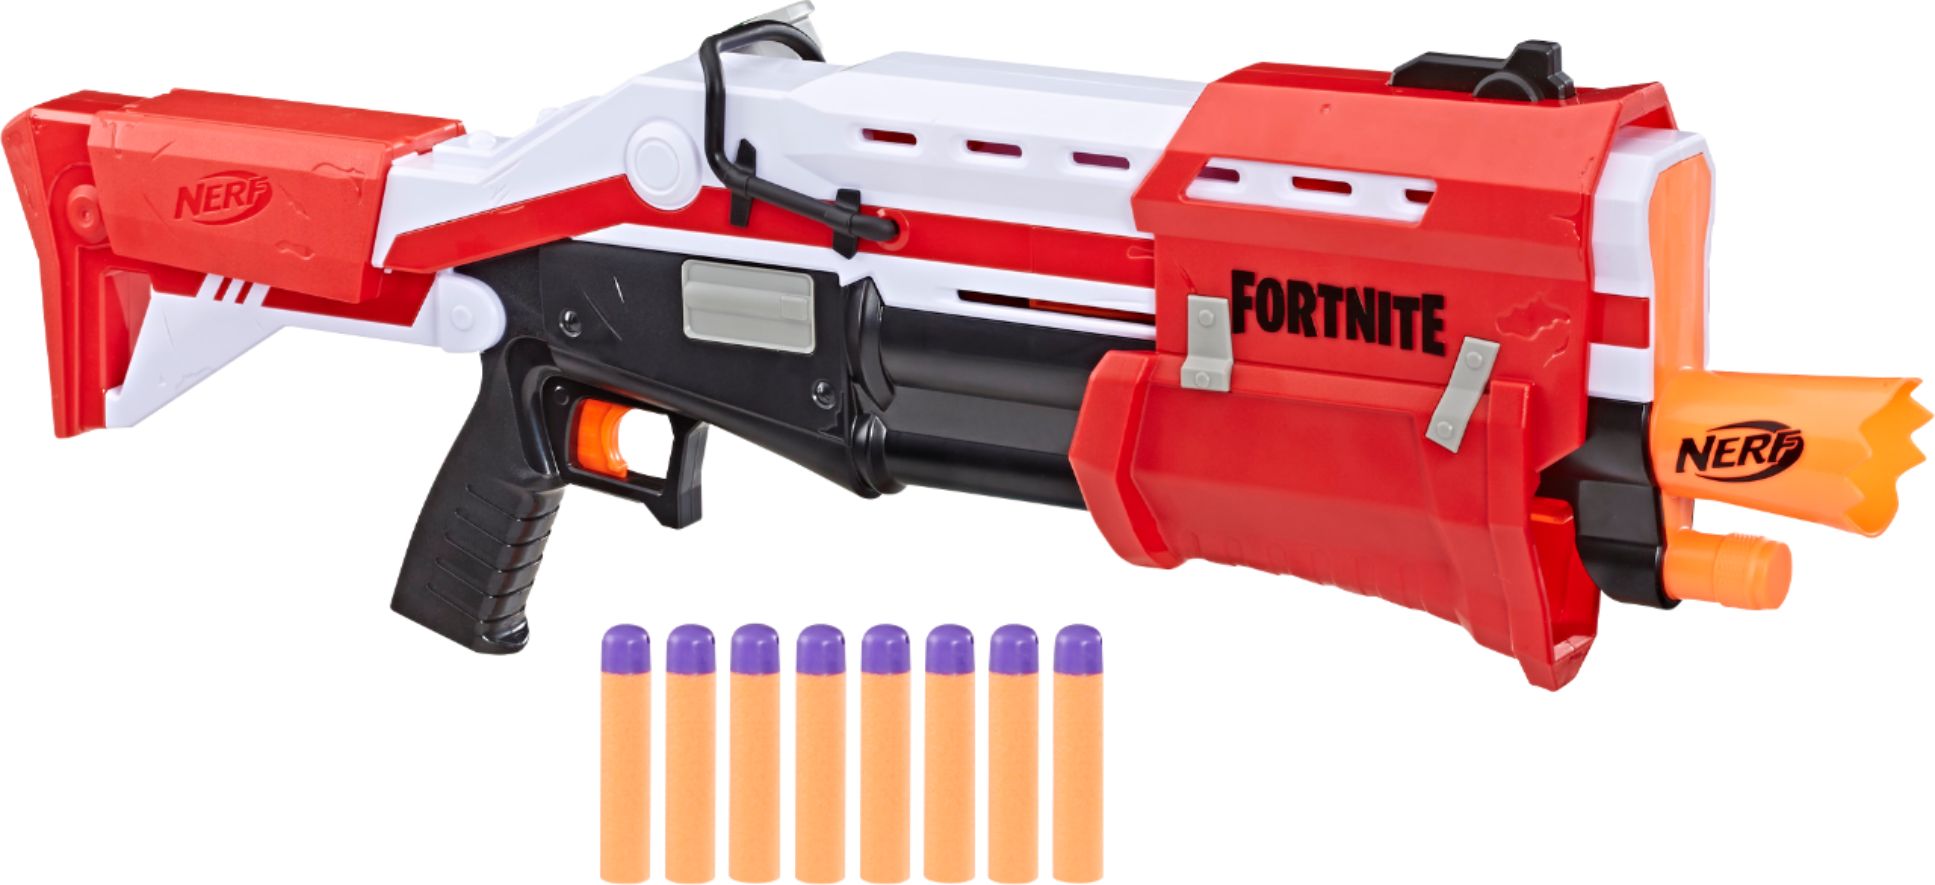 Fortnite TS Blaster E6159 - Best Buy